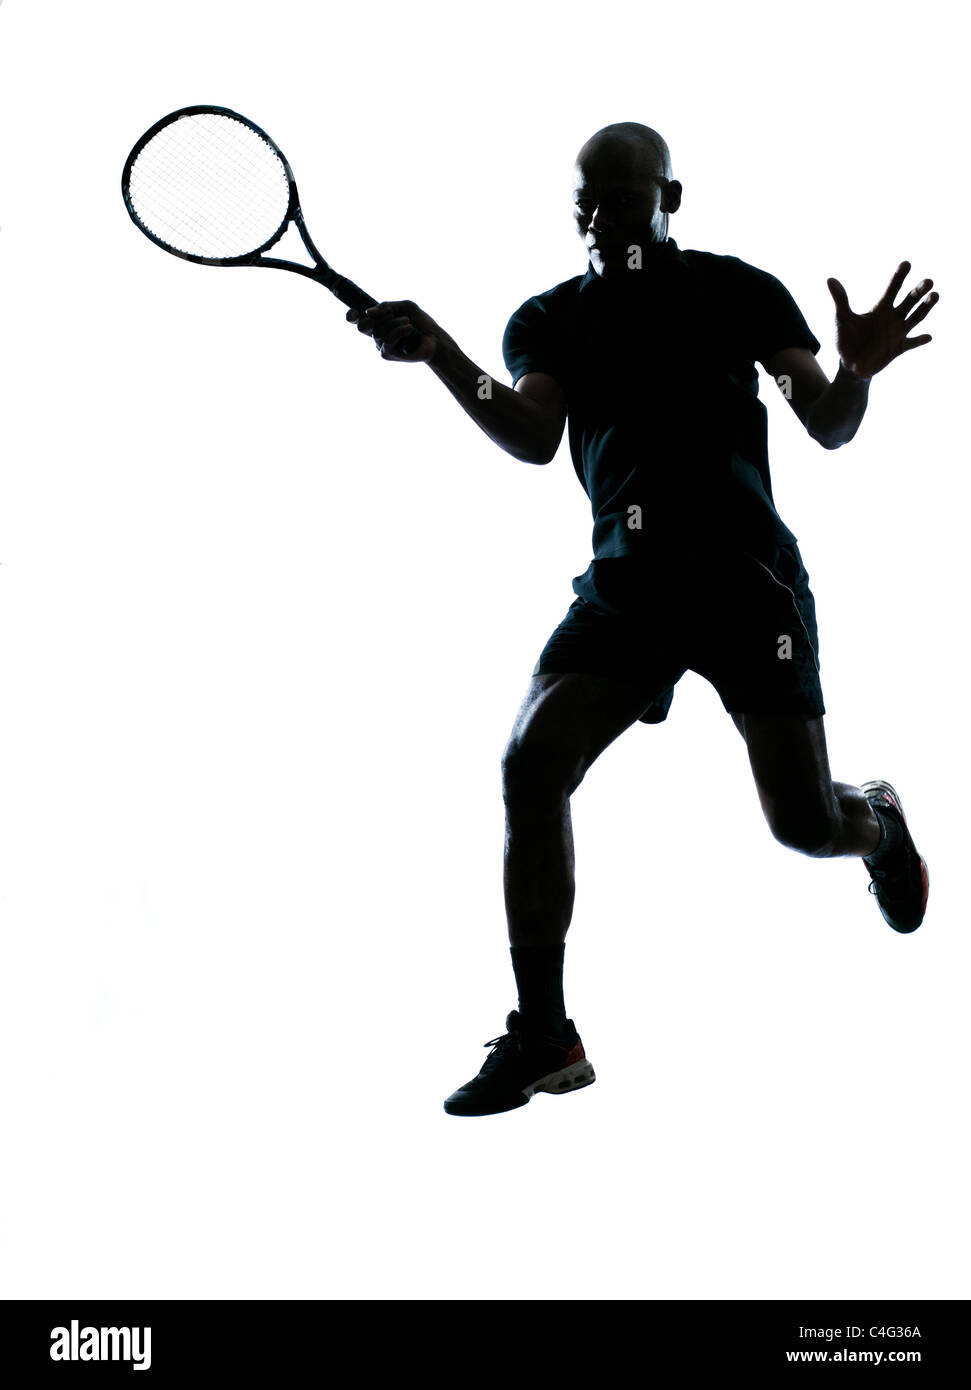 L'Afrique de l'homme afro-américain à jouer au tennis player forehand sur studio isolé sur fond blanc Banque D'Images